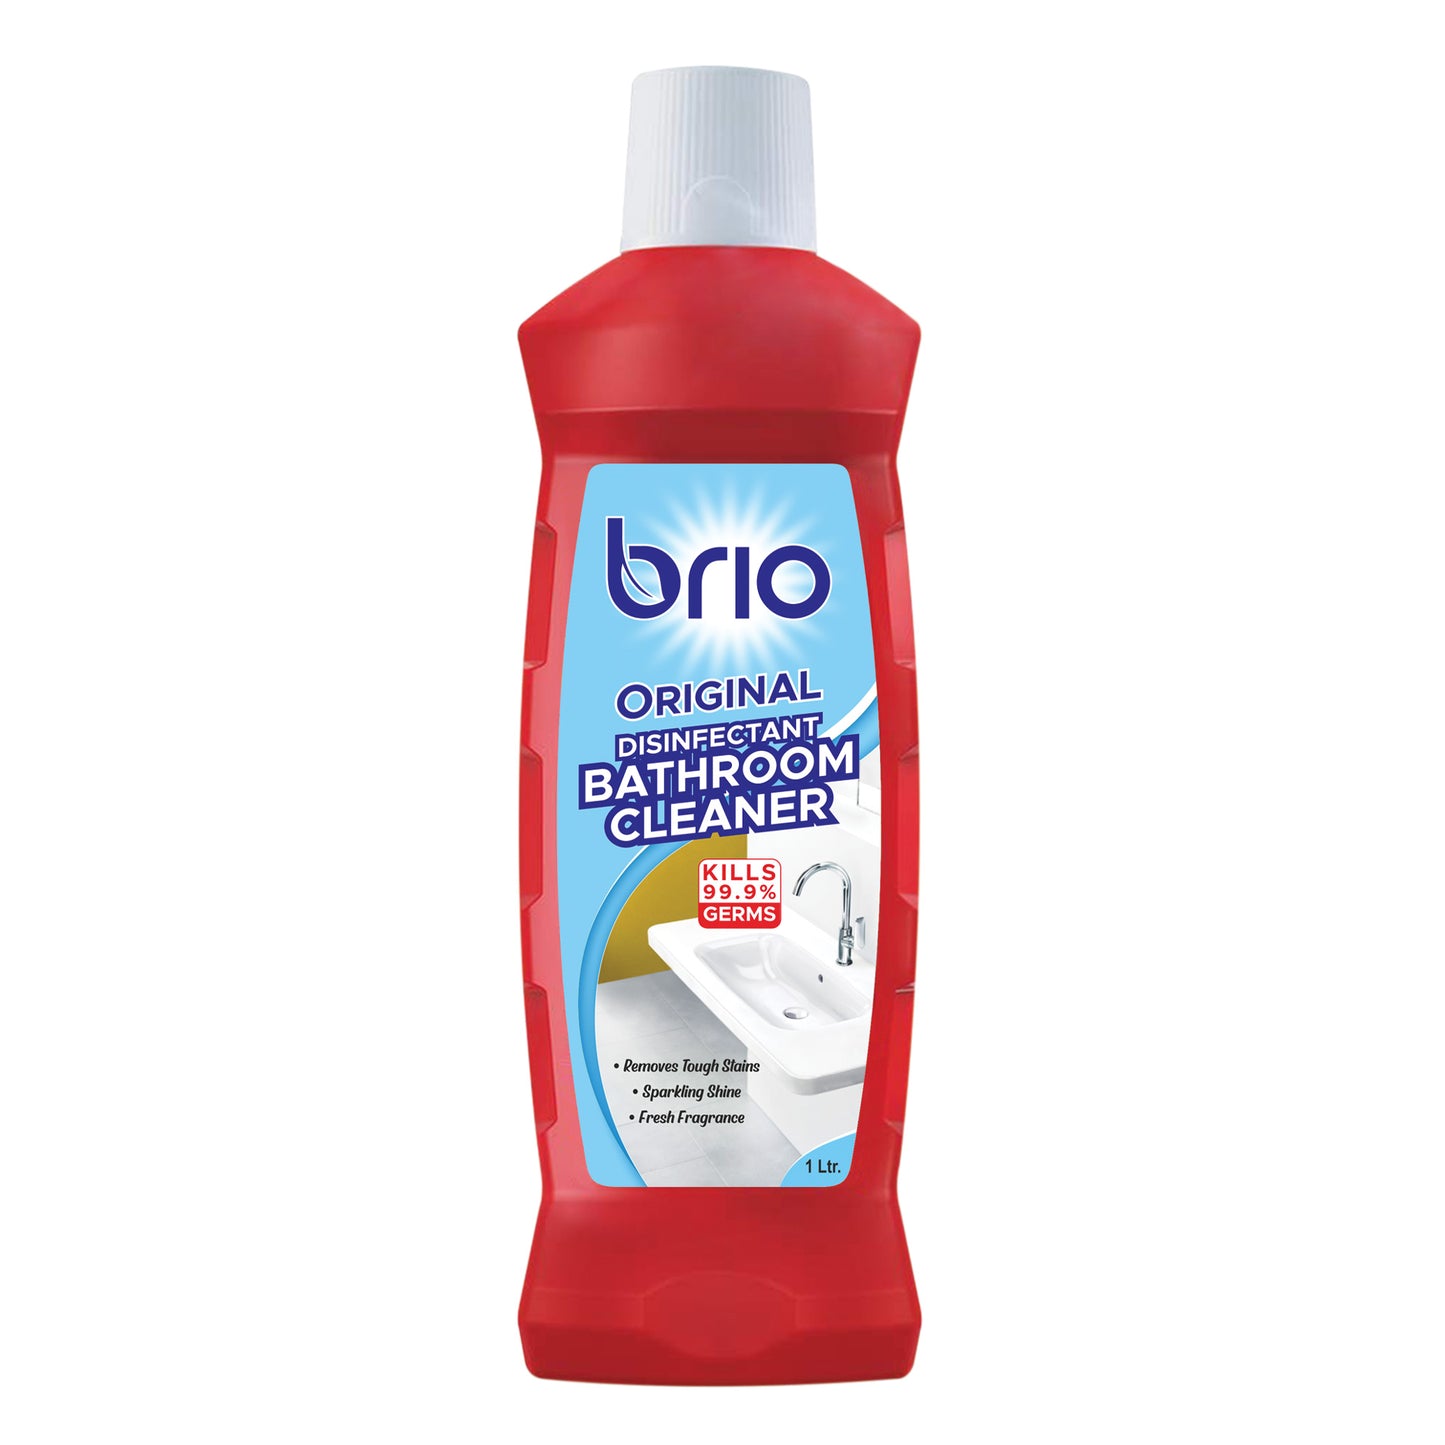 Brio Original Disinfectant Bathroom Cleaner 1Ltr